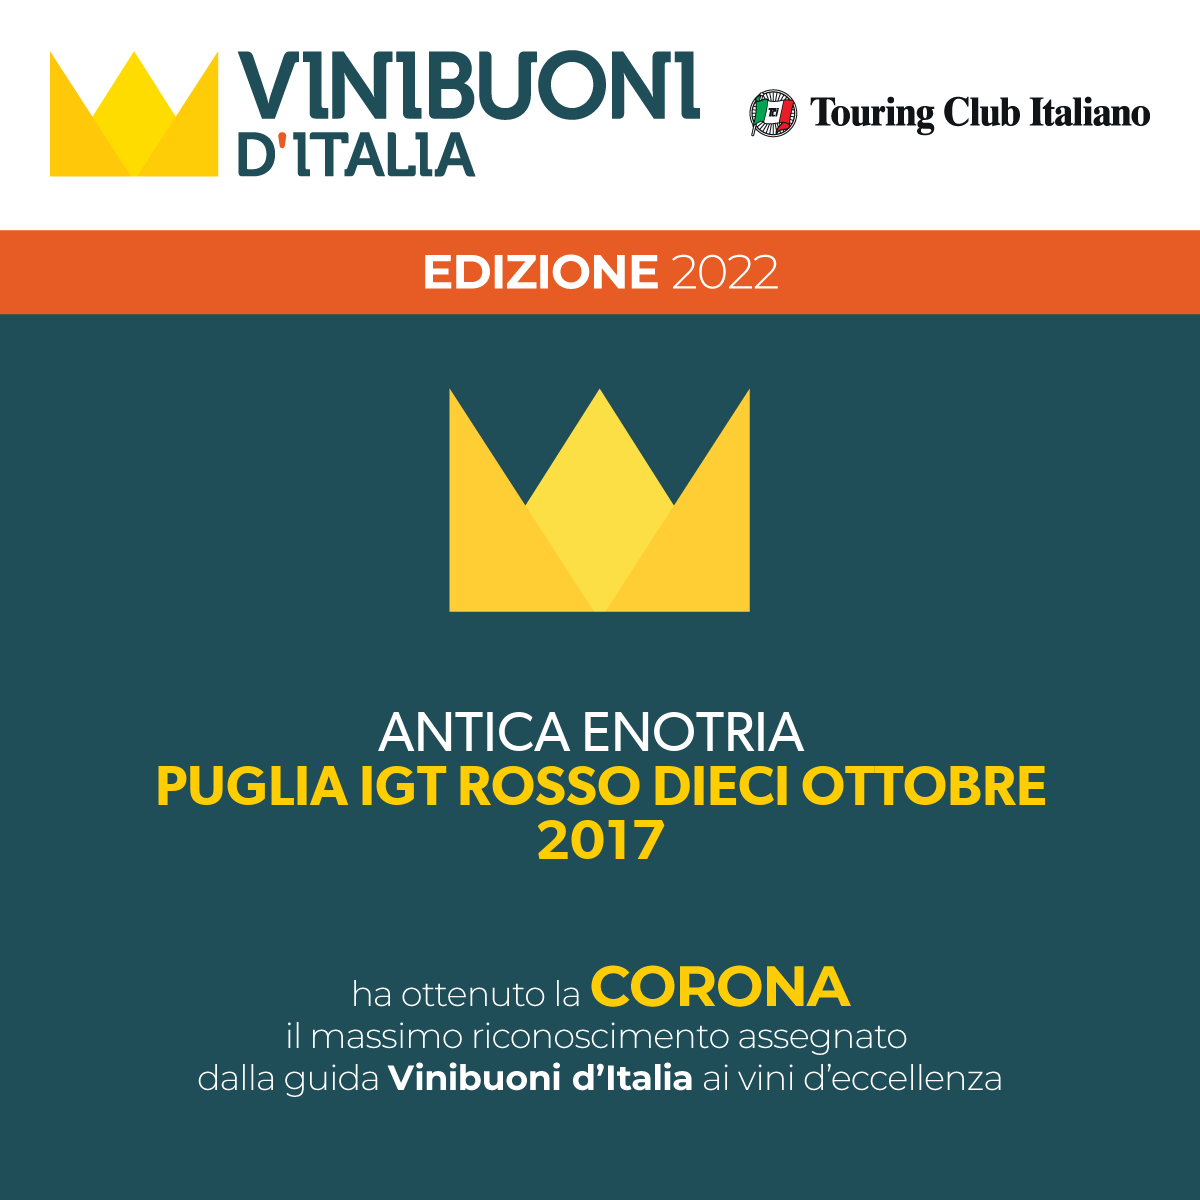 Vinibuoni D’Italia – Dieci Ottobre obtains the Crown